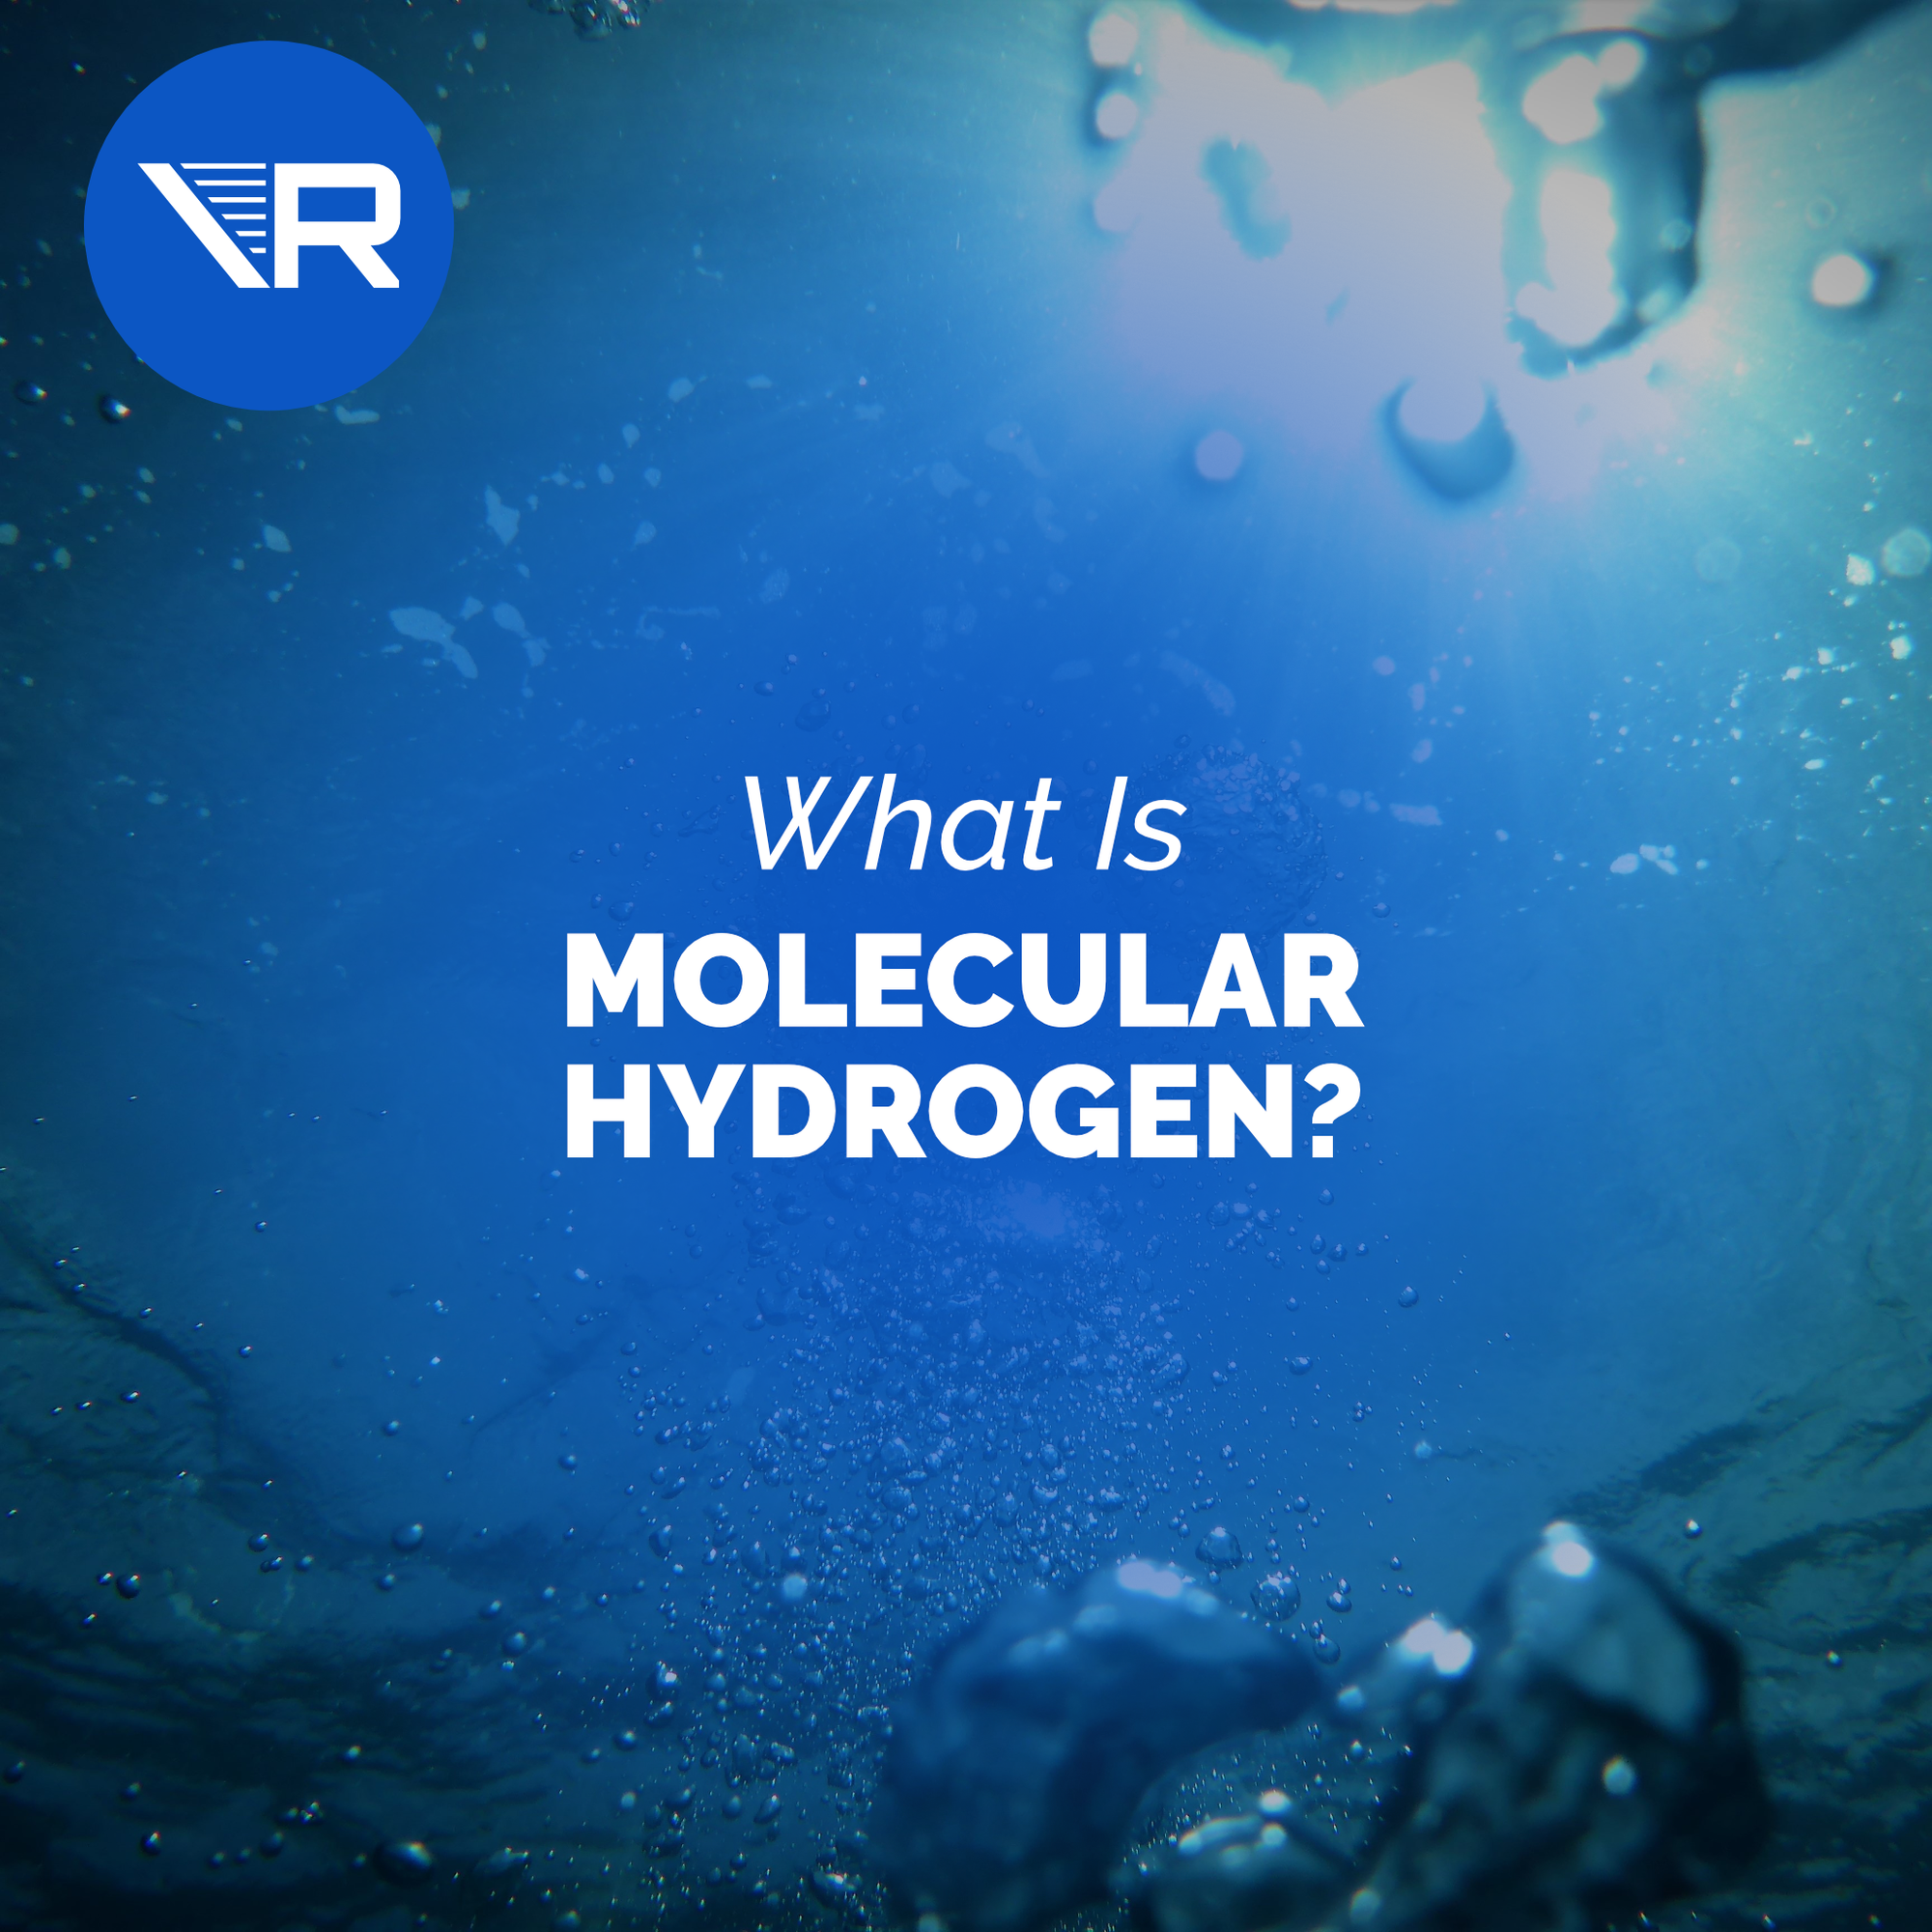 What is molecular hydrogen?